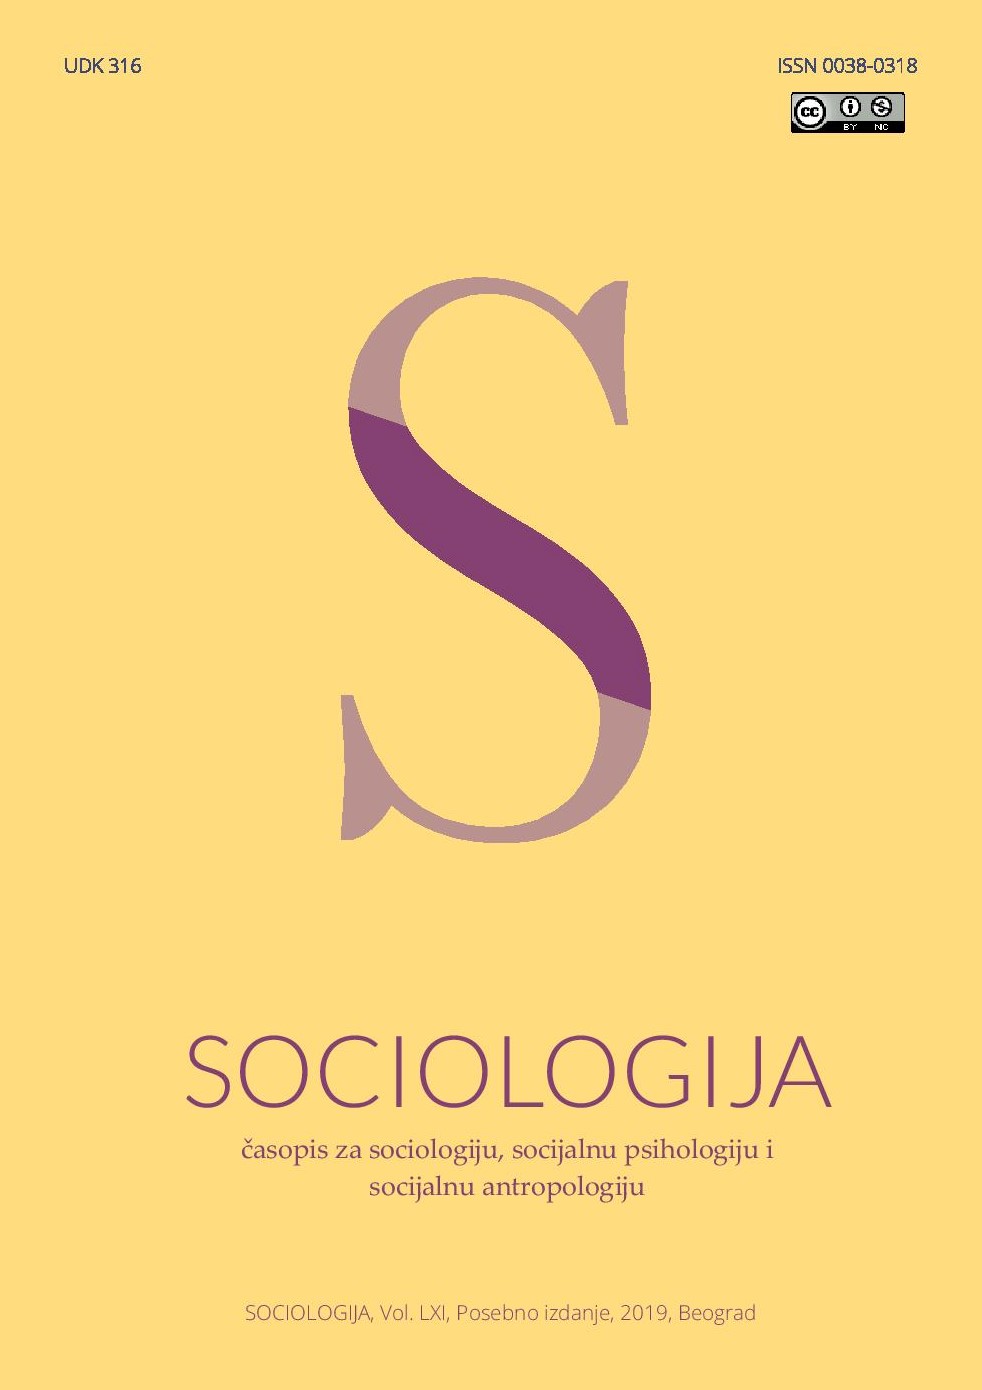 Mogućnosti unapređenja nastave sociologije: Analiza povezanosti okvira kvalifikacija na sekundarnom i tercijarnom nivou
obrazovanja u Srbiji